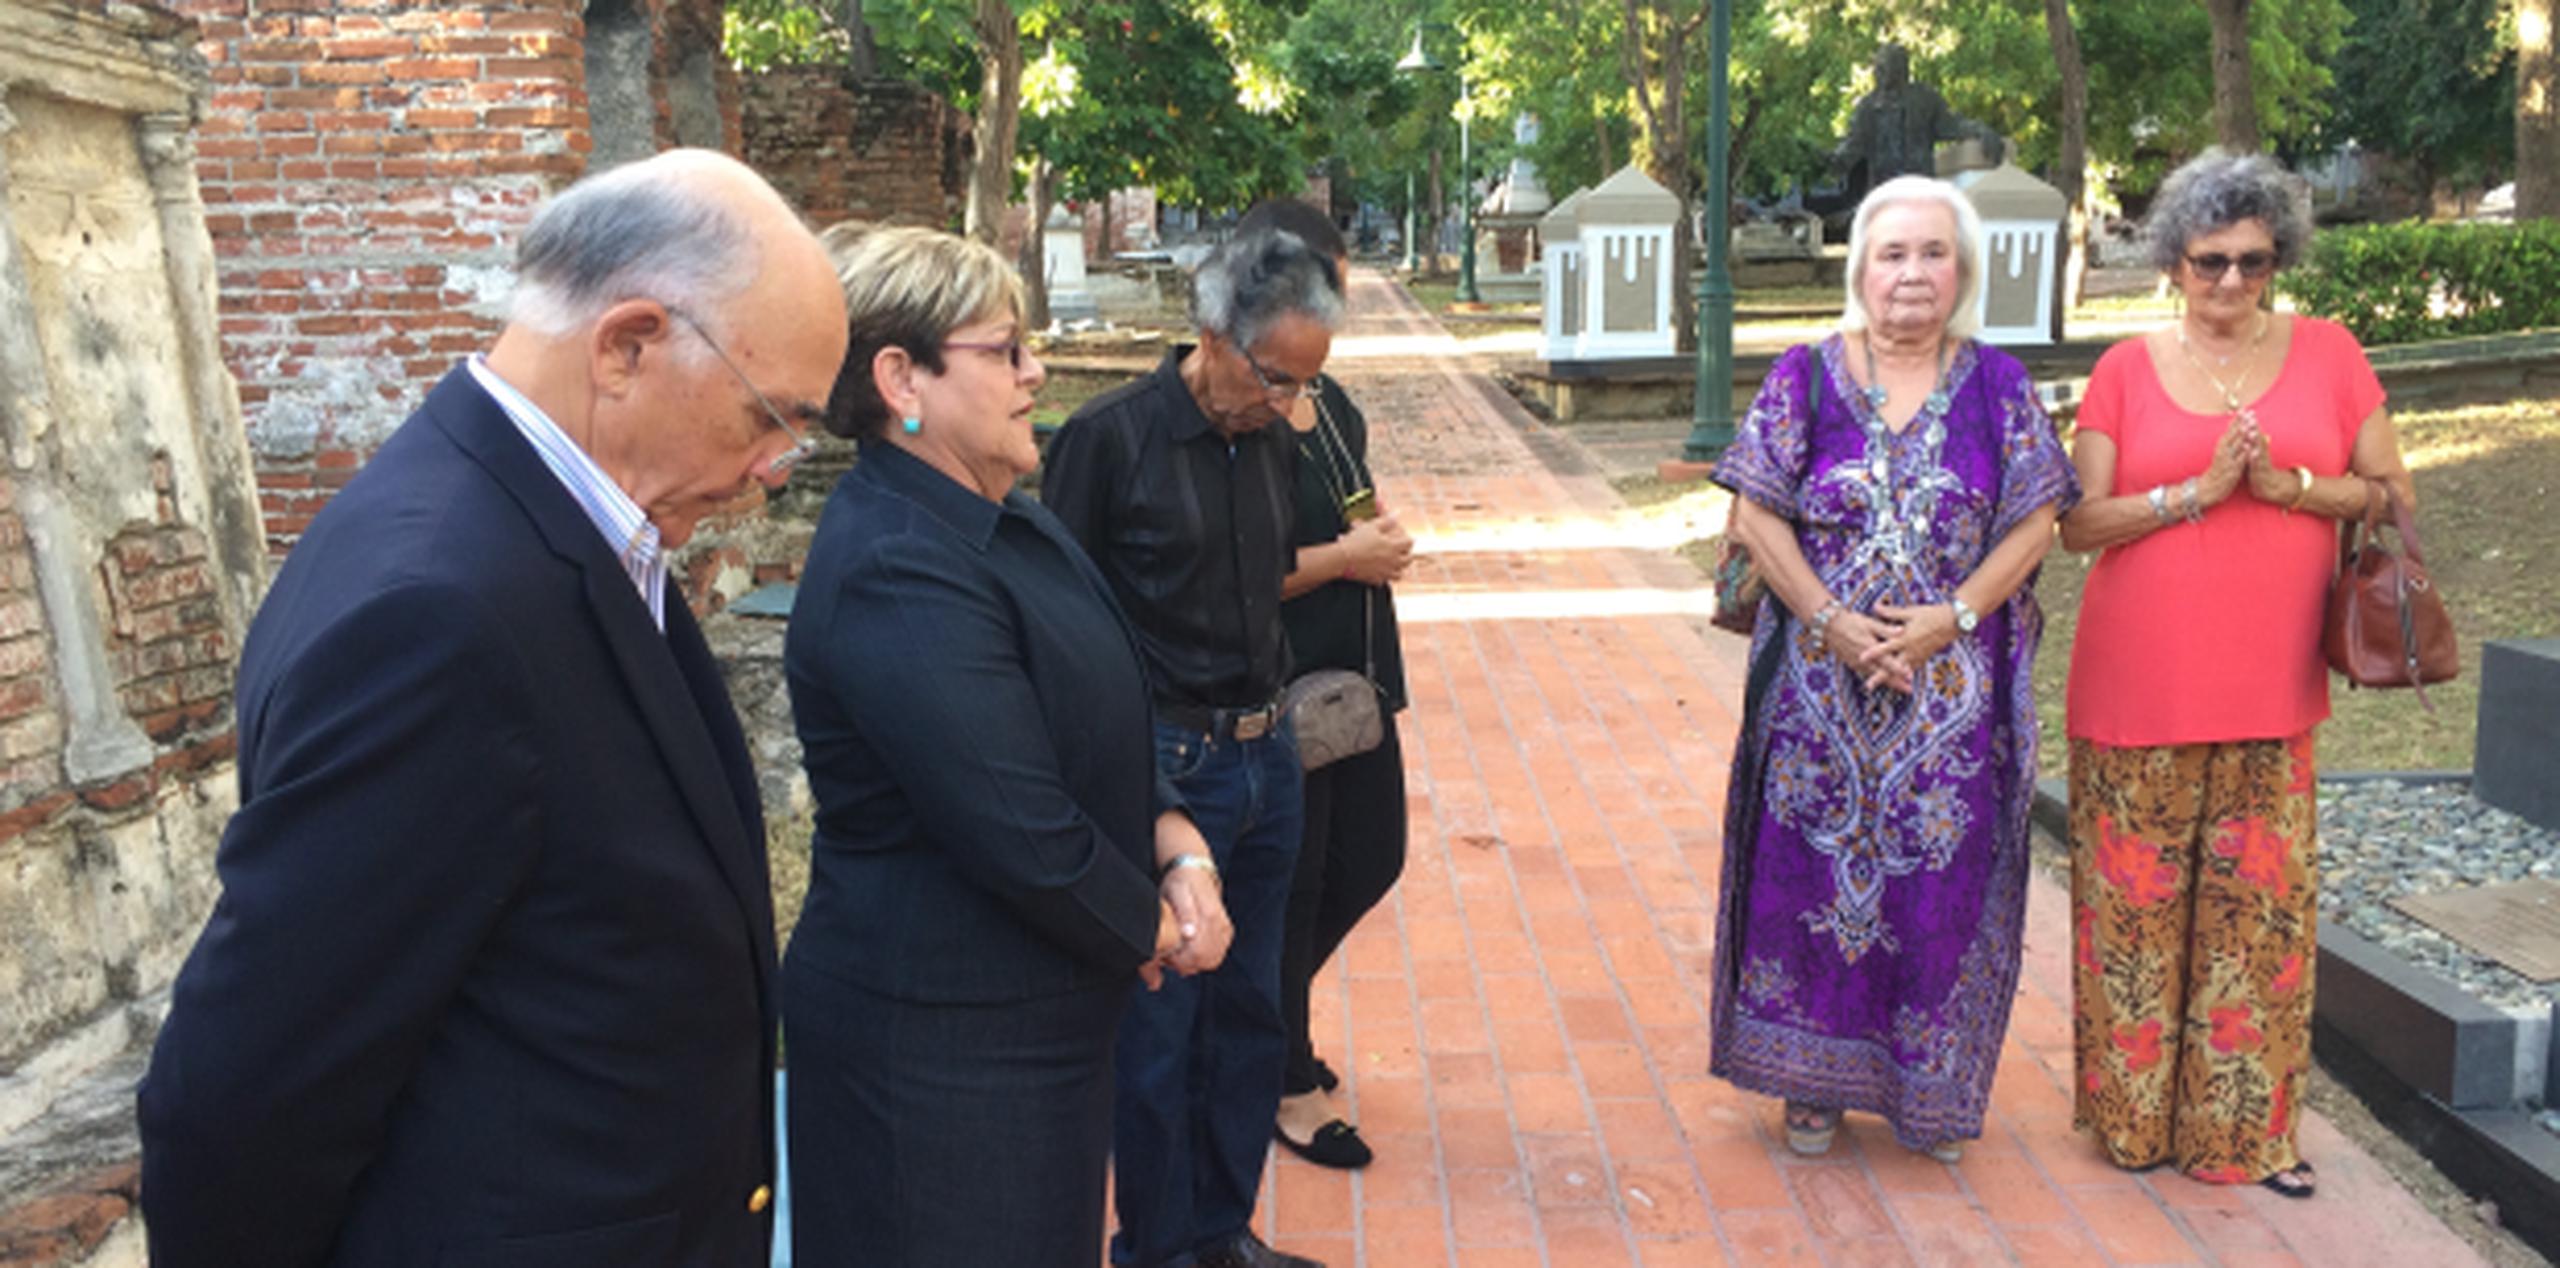 La alcaldesa de Ponce, María Meléndez, encabezó la ceremonia junto a amigos y colaboradores del fenecido alcalde ponceño. (Archivo)